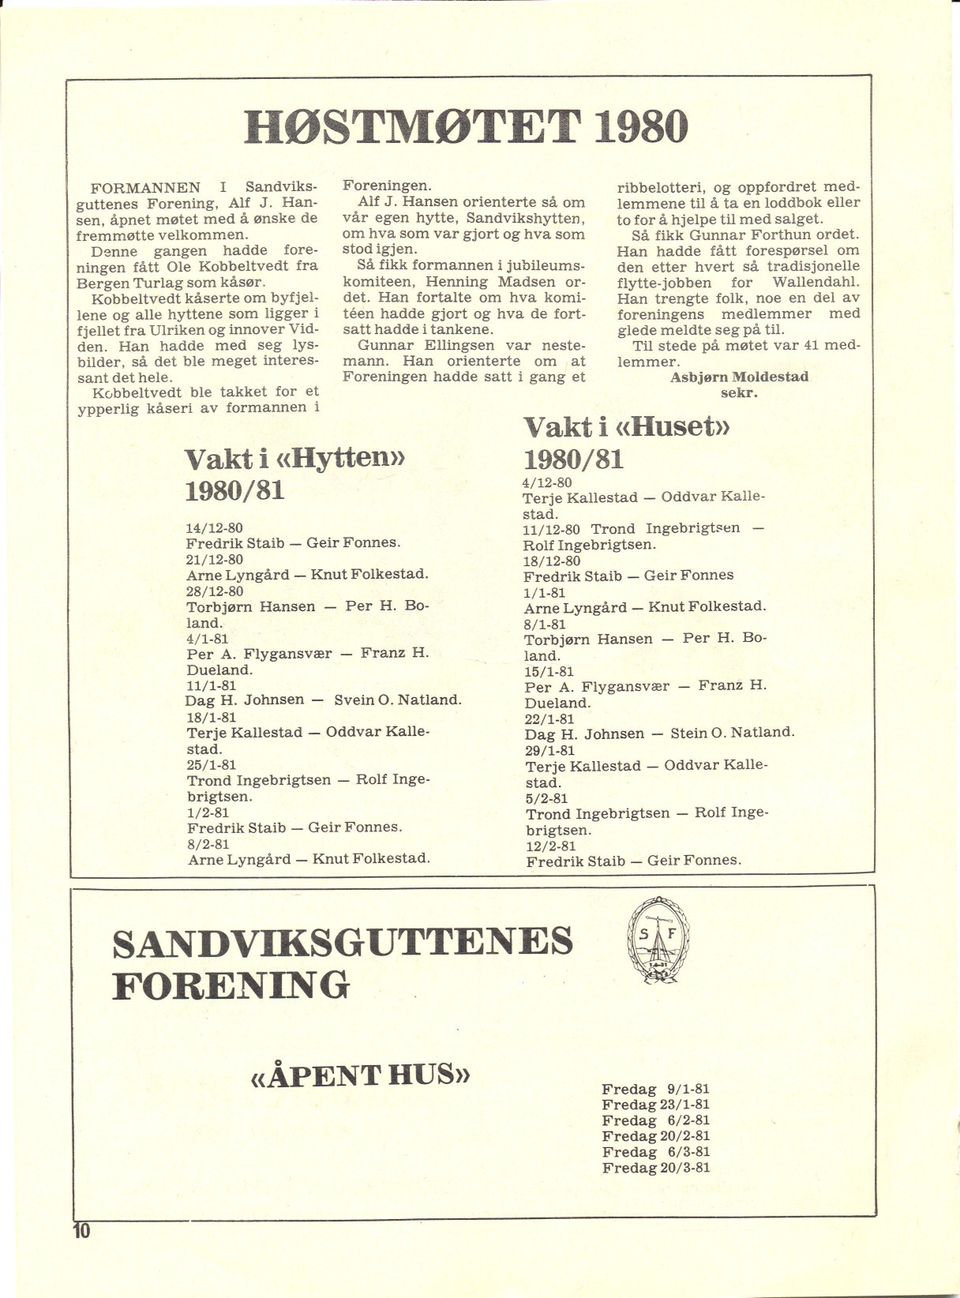 Kobbeltvedt ble takket for et ypperlig kåseri av formannen i HØSTMØTET 1980 Vakt i «Hytten» 1980/81 14/12-80 Fredrik Staib - Geir Fonnes. 21/12-80 Arne Lyngård - Knut Folkestad.